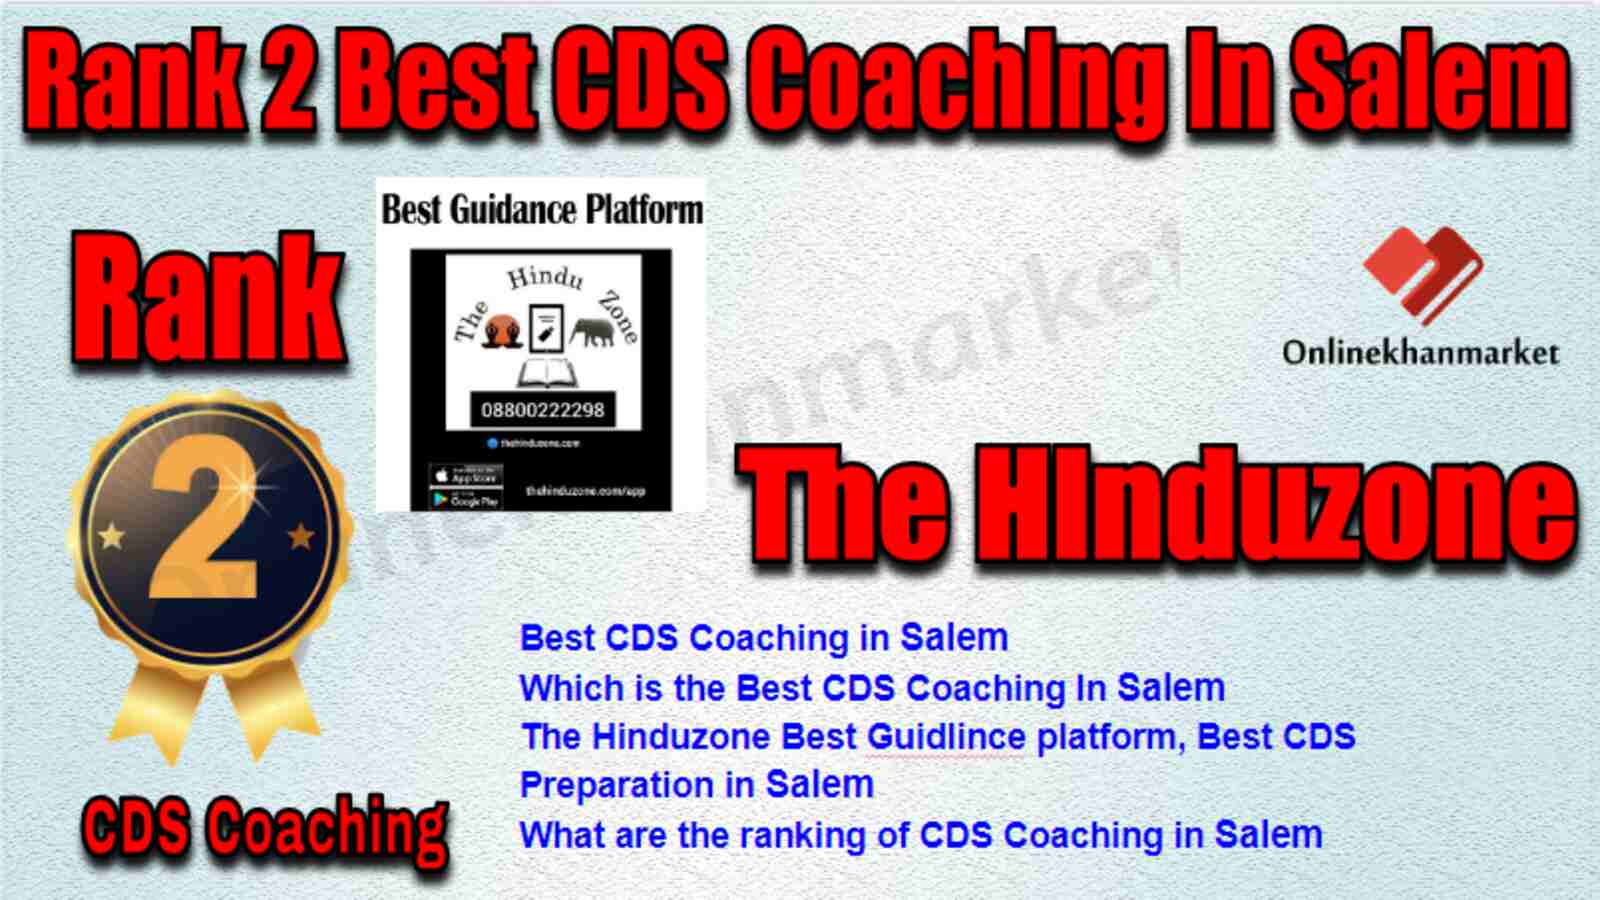 Rank 2 Best CDS Coaching in Salem